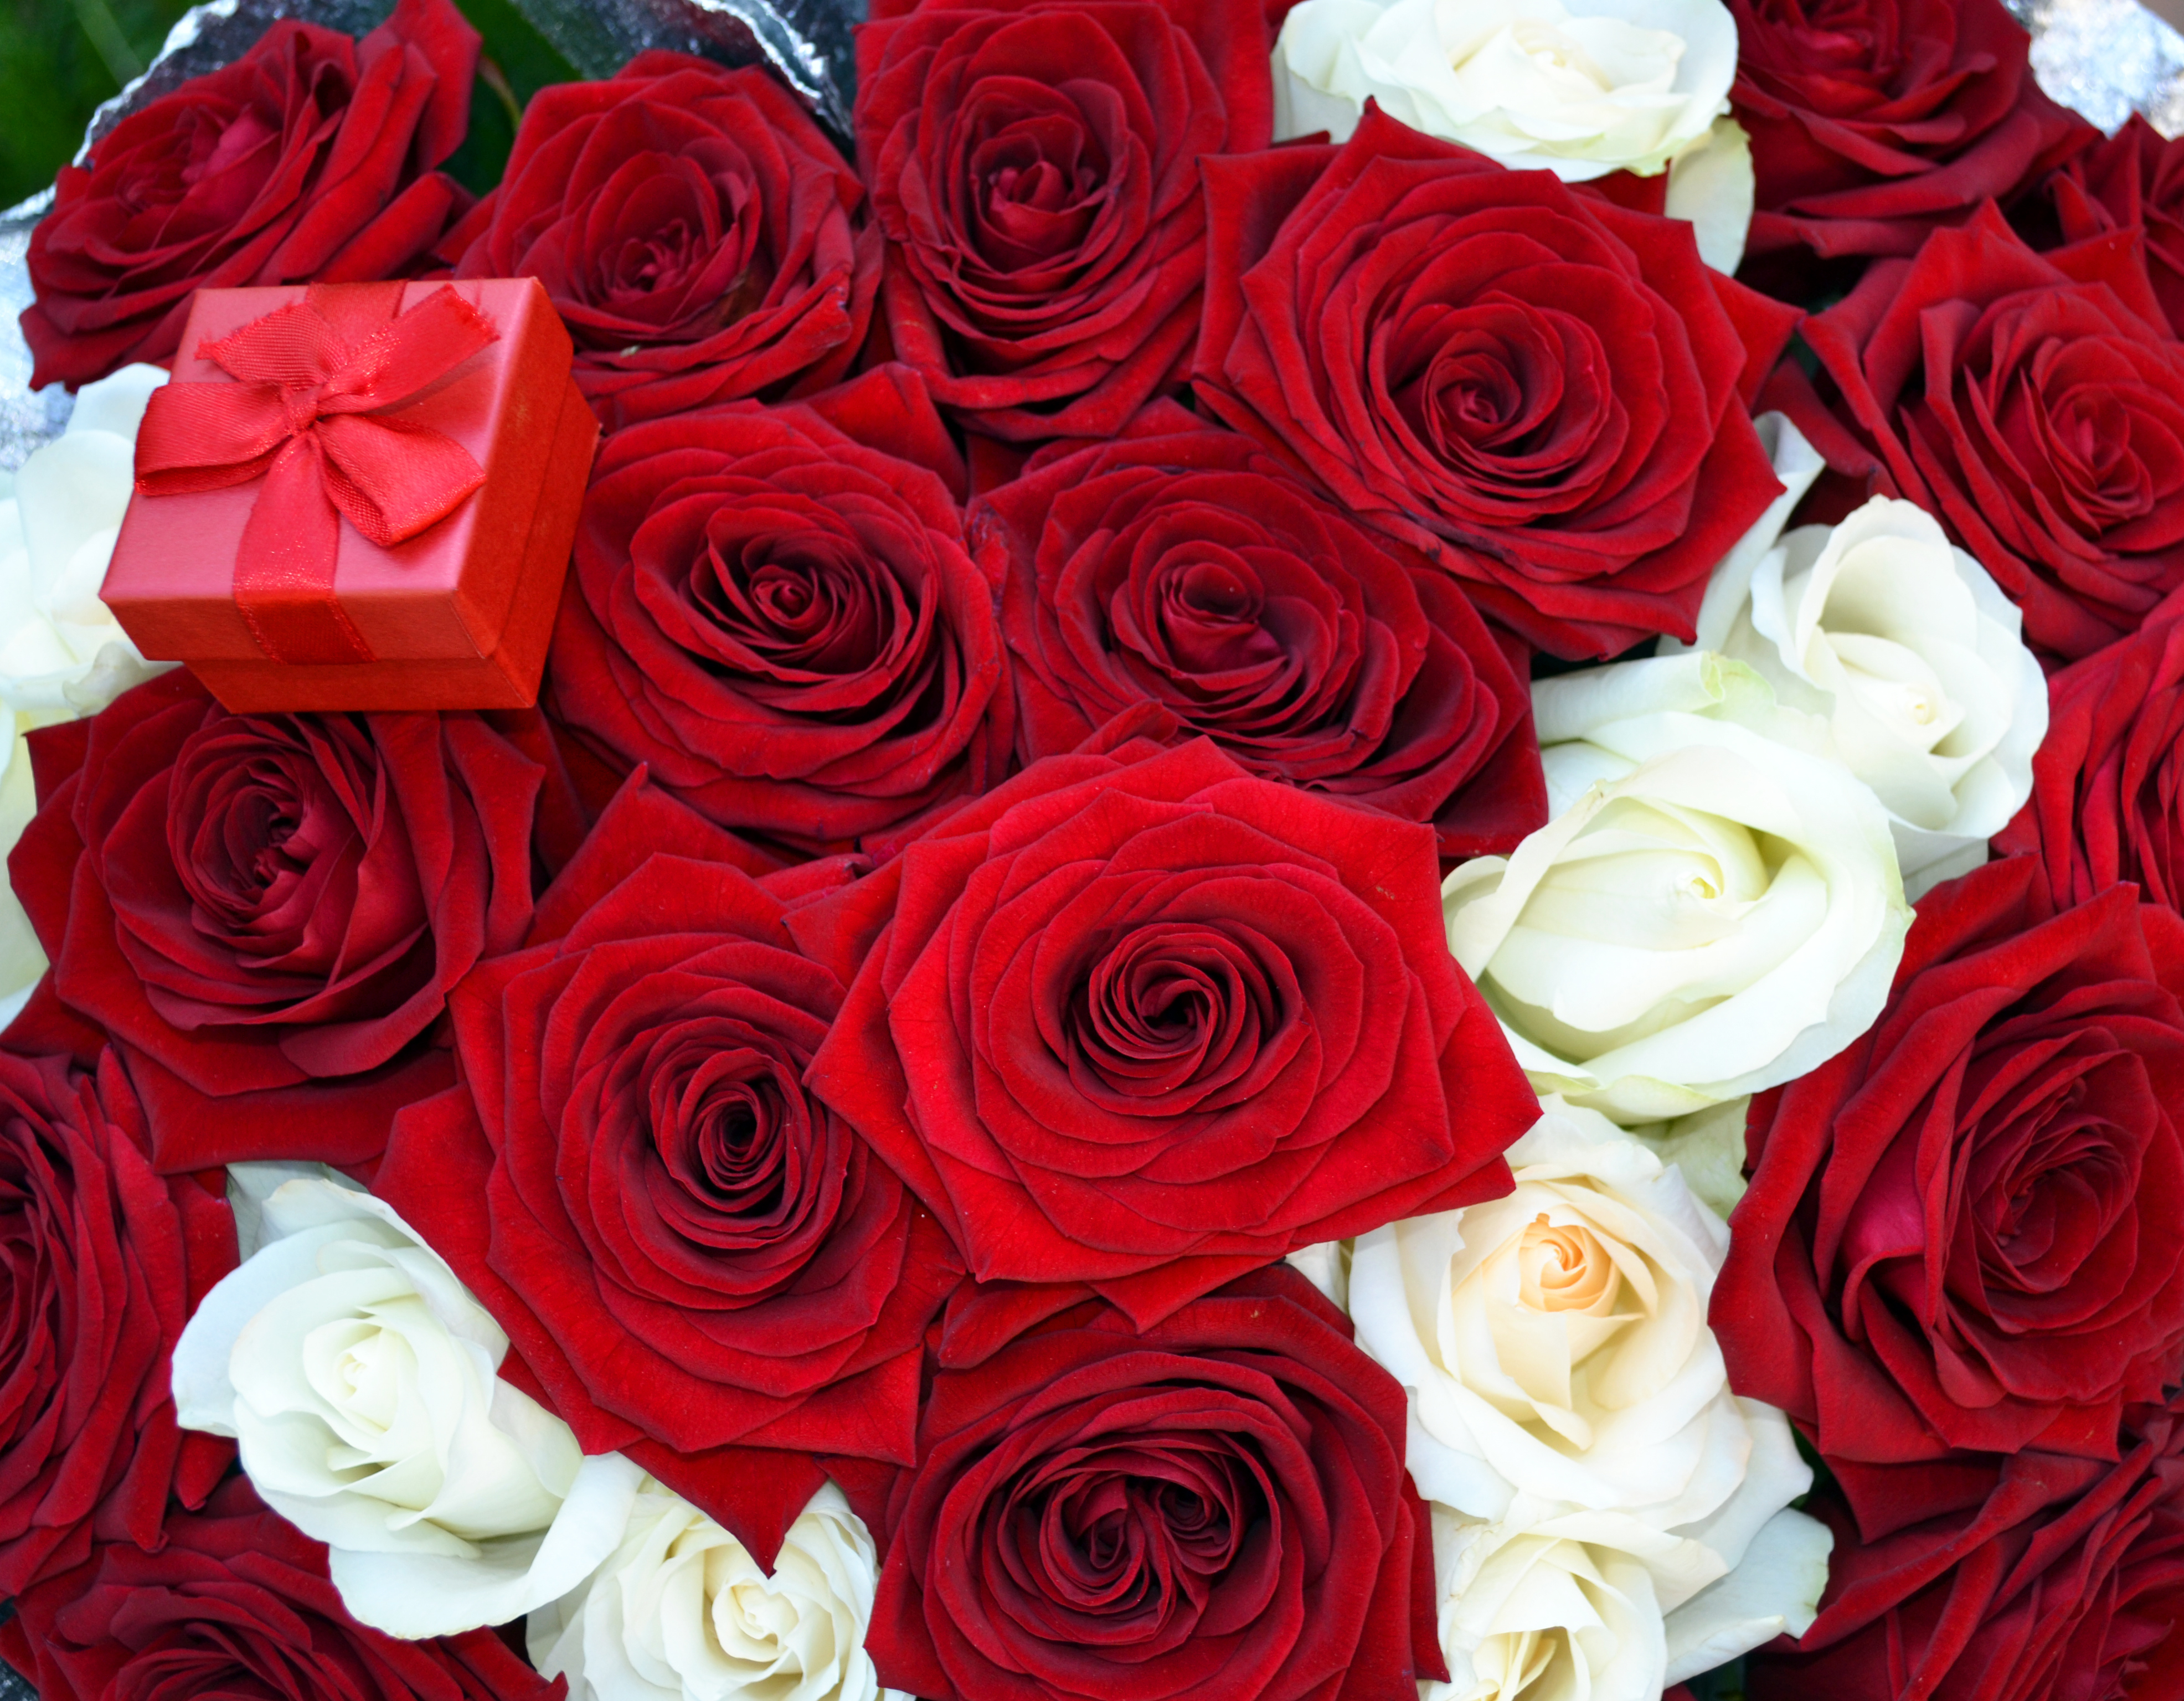 Gullar rasmi atirgul. Красивый букет роз. Шикарный букет роз. Красивый букет красных роз.